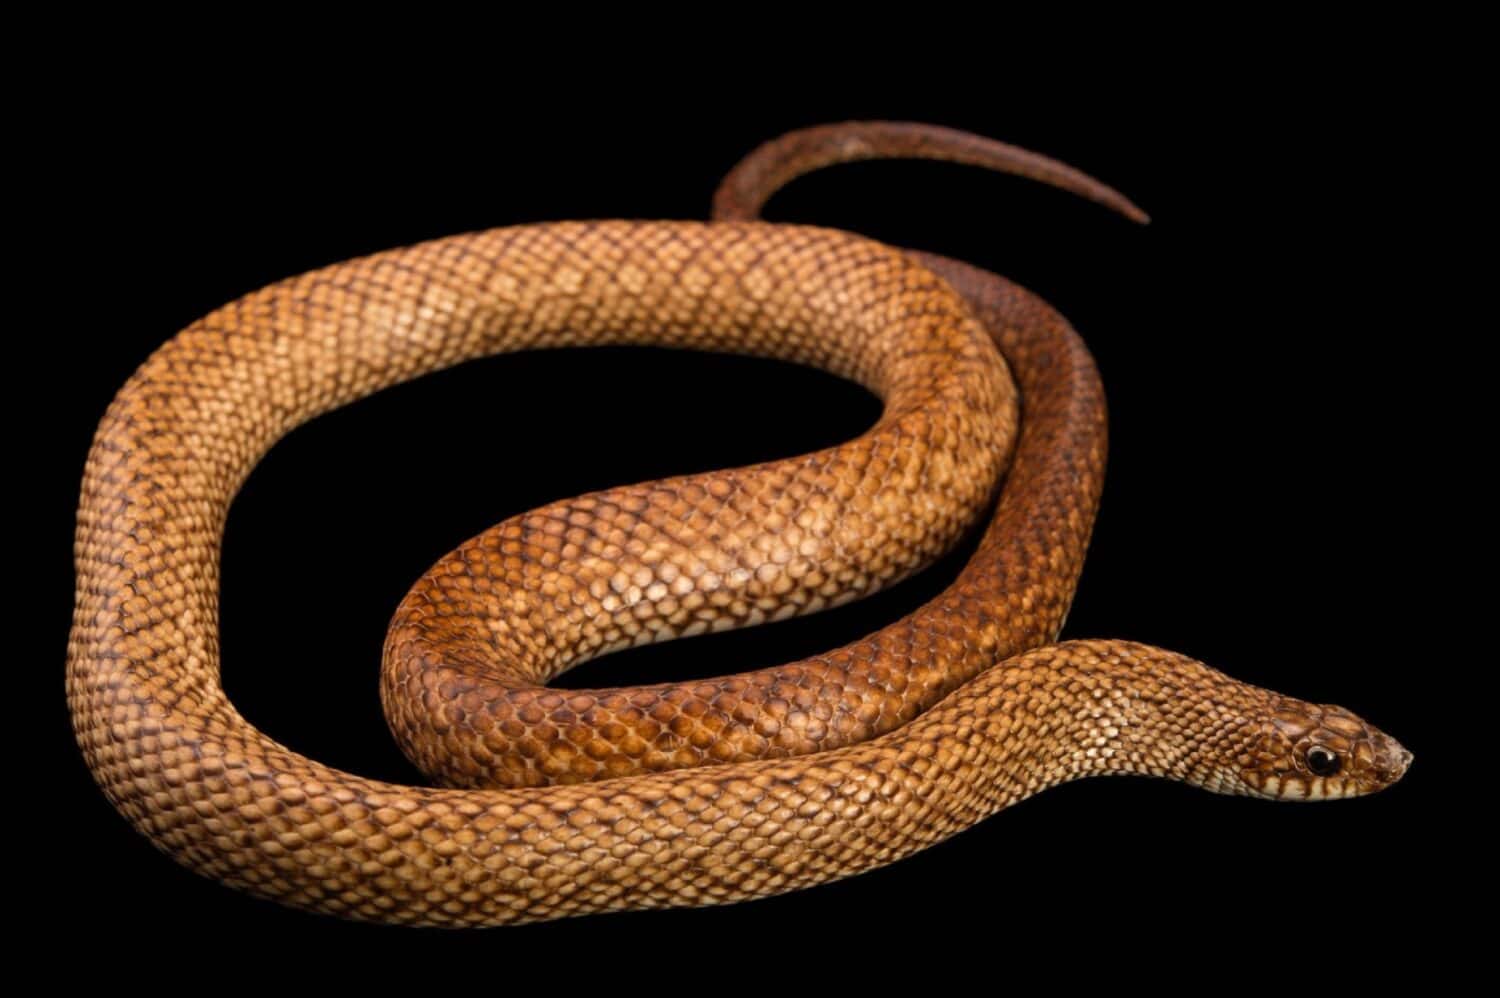 A speckled hognose snake and black background 